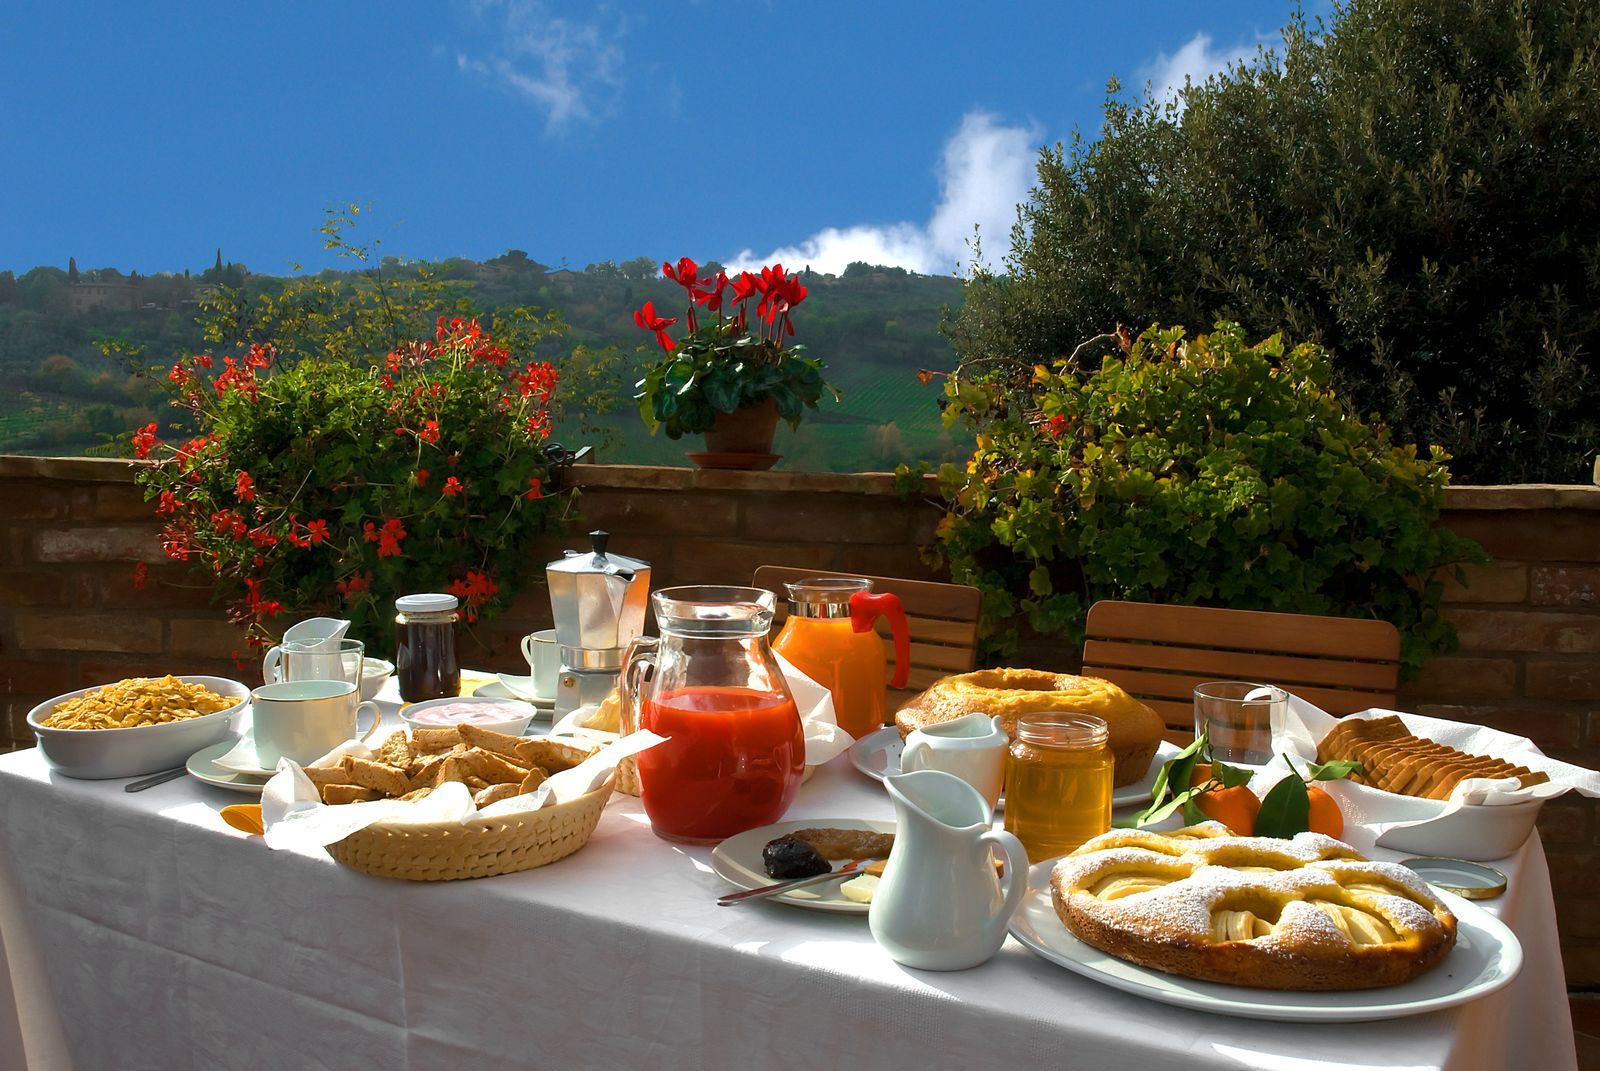 Рабочий завтрак. Вилла Италия Тоскана завтрак. Завтрак на террасе. Завтрак на природе. Обед на веранде.